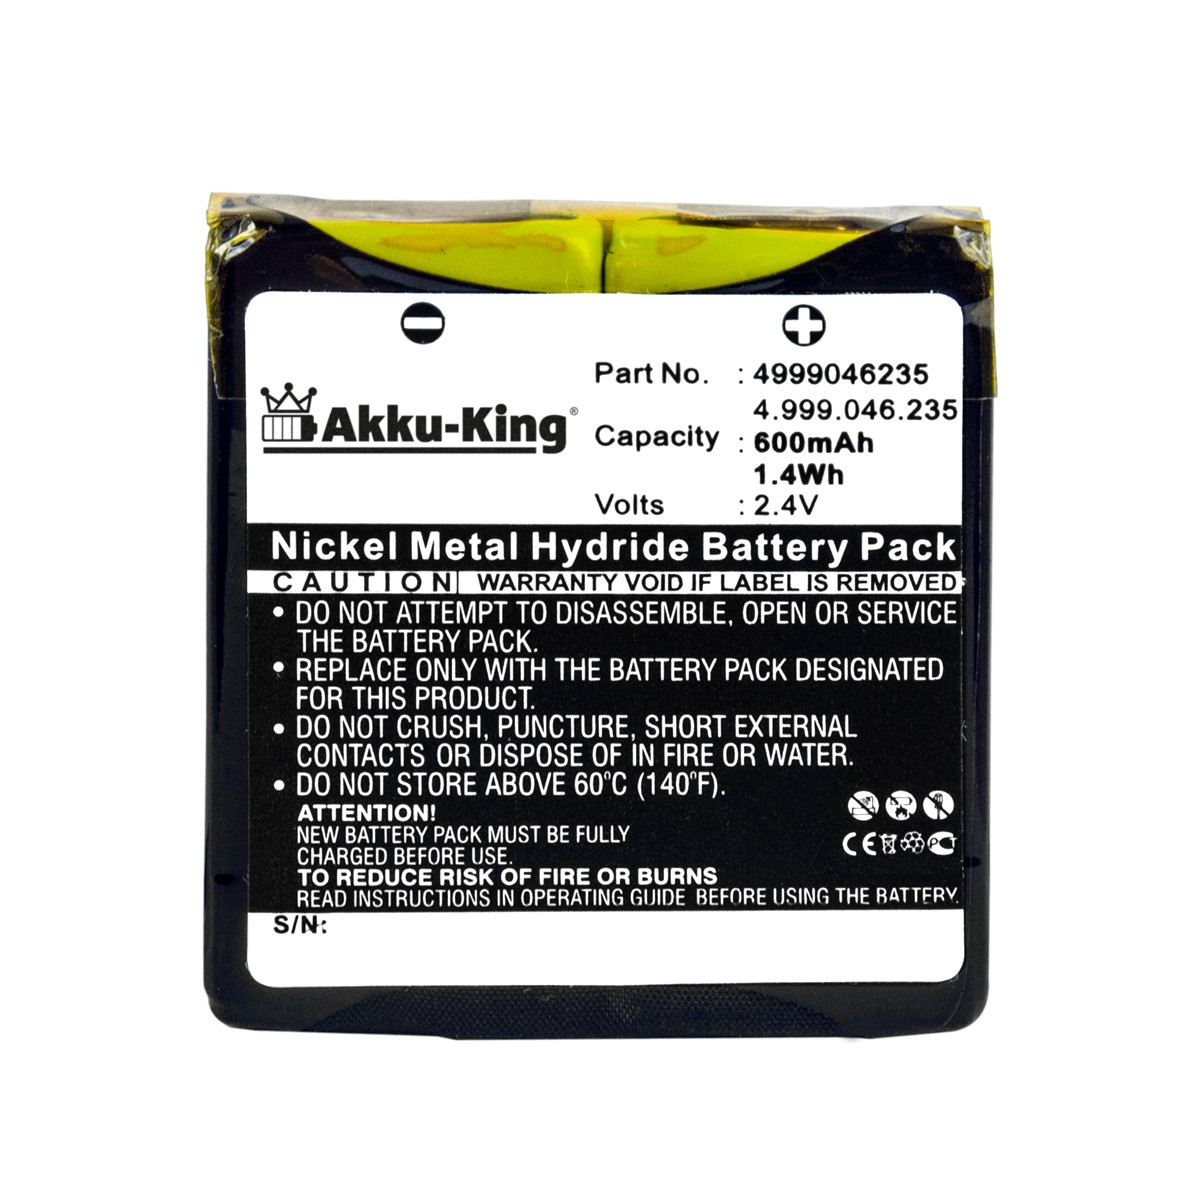 AKKU-KING Akku kompatibel mit Ni-MH 4.999.046.235 600mAh Geräte-Akku, 2.4 Volt, Aastra